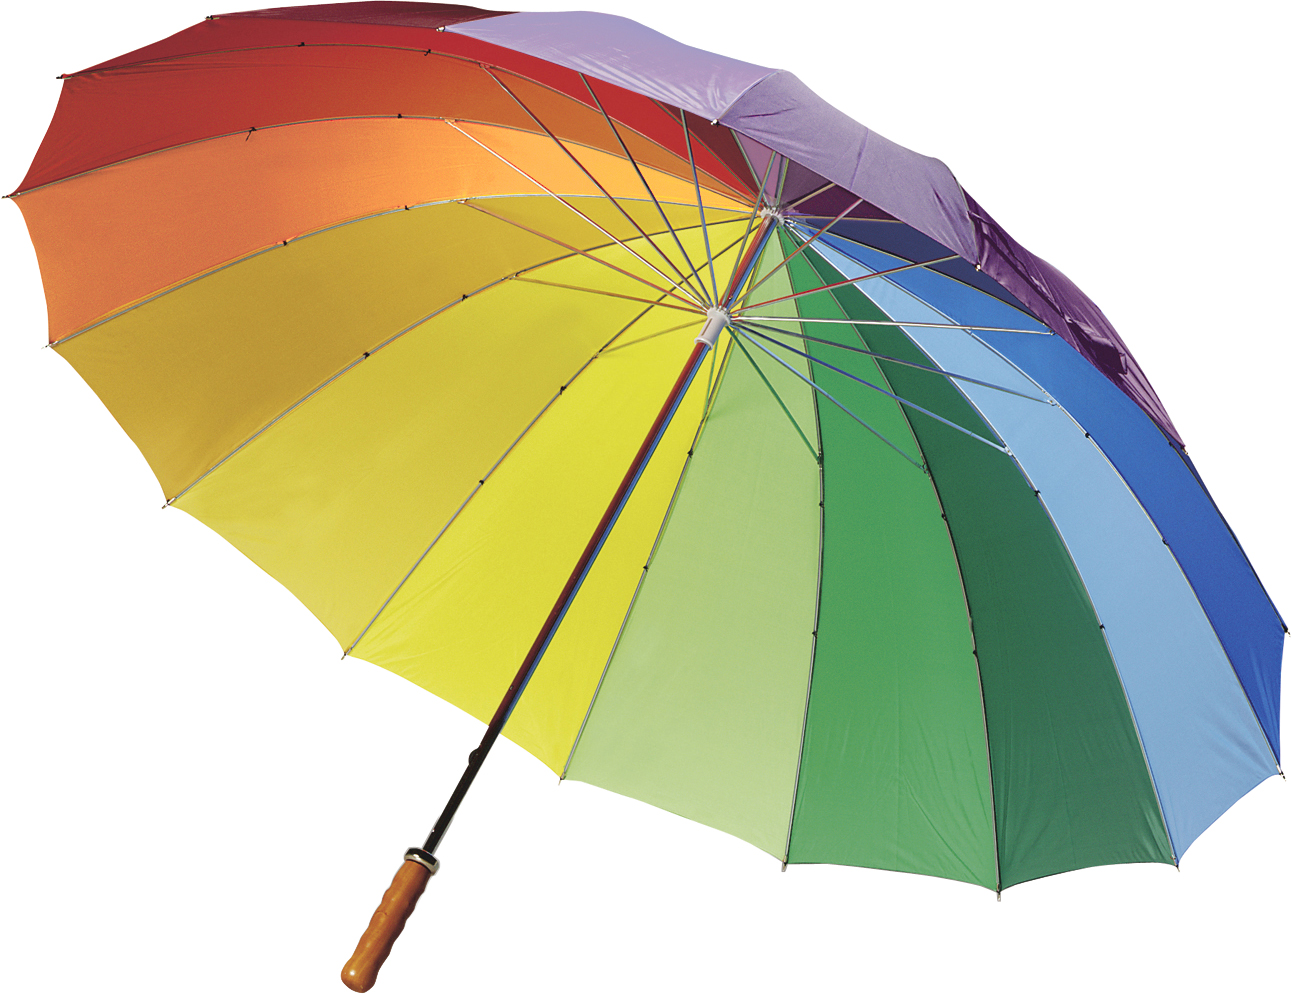 Роль зонтика. Зонтик. Радужный зонтик. Зонтик цвета радуги. Зонт на белом фоне.